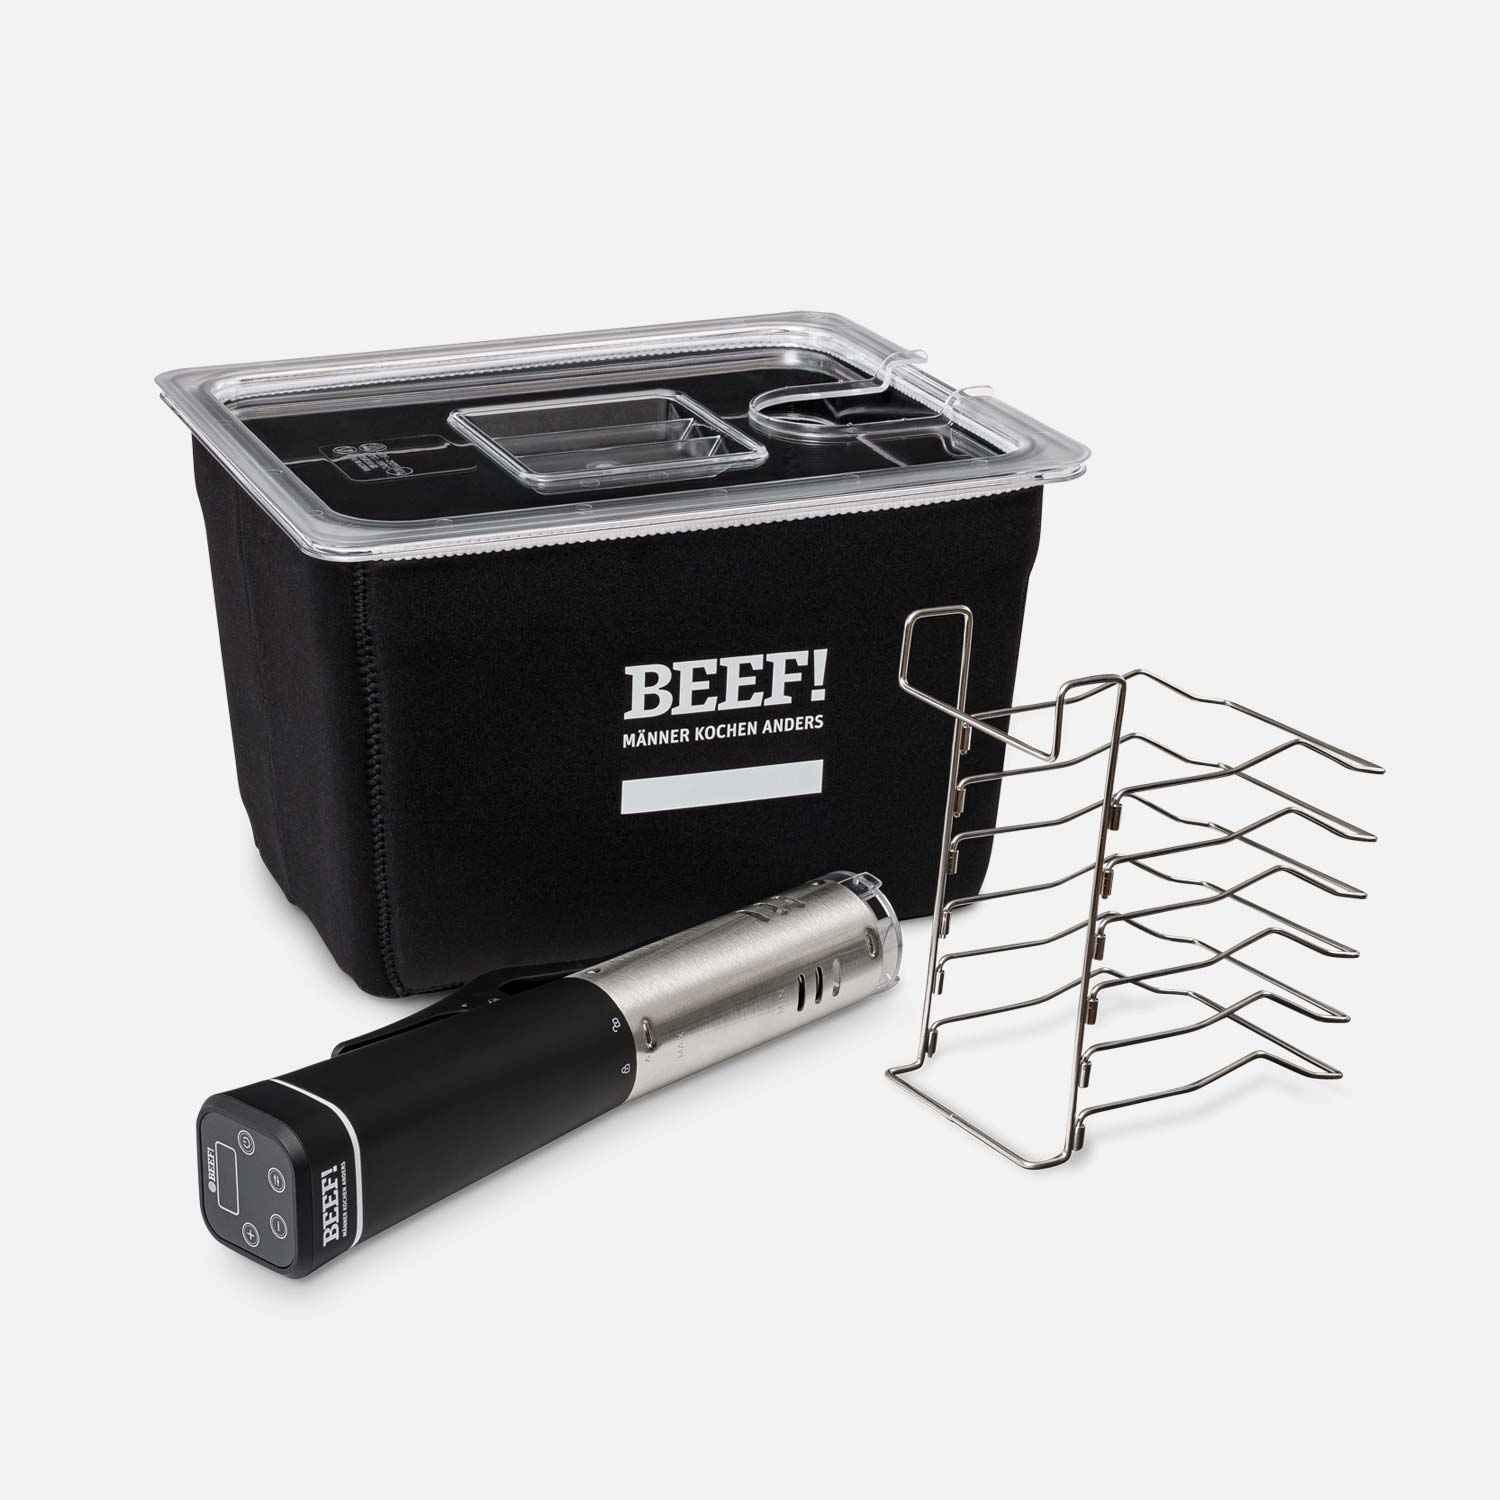 Sous-Vide-Set BEEF! Edition, bestehend aus Sous-Vide Stick, 12 Liter Kunststoffbecken mit Deckel, Isolationshülle und Beutelhalter